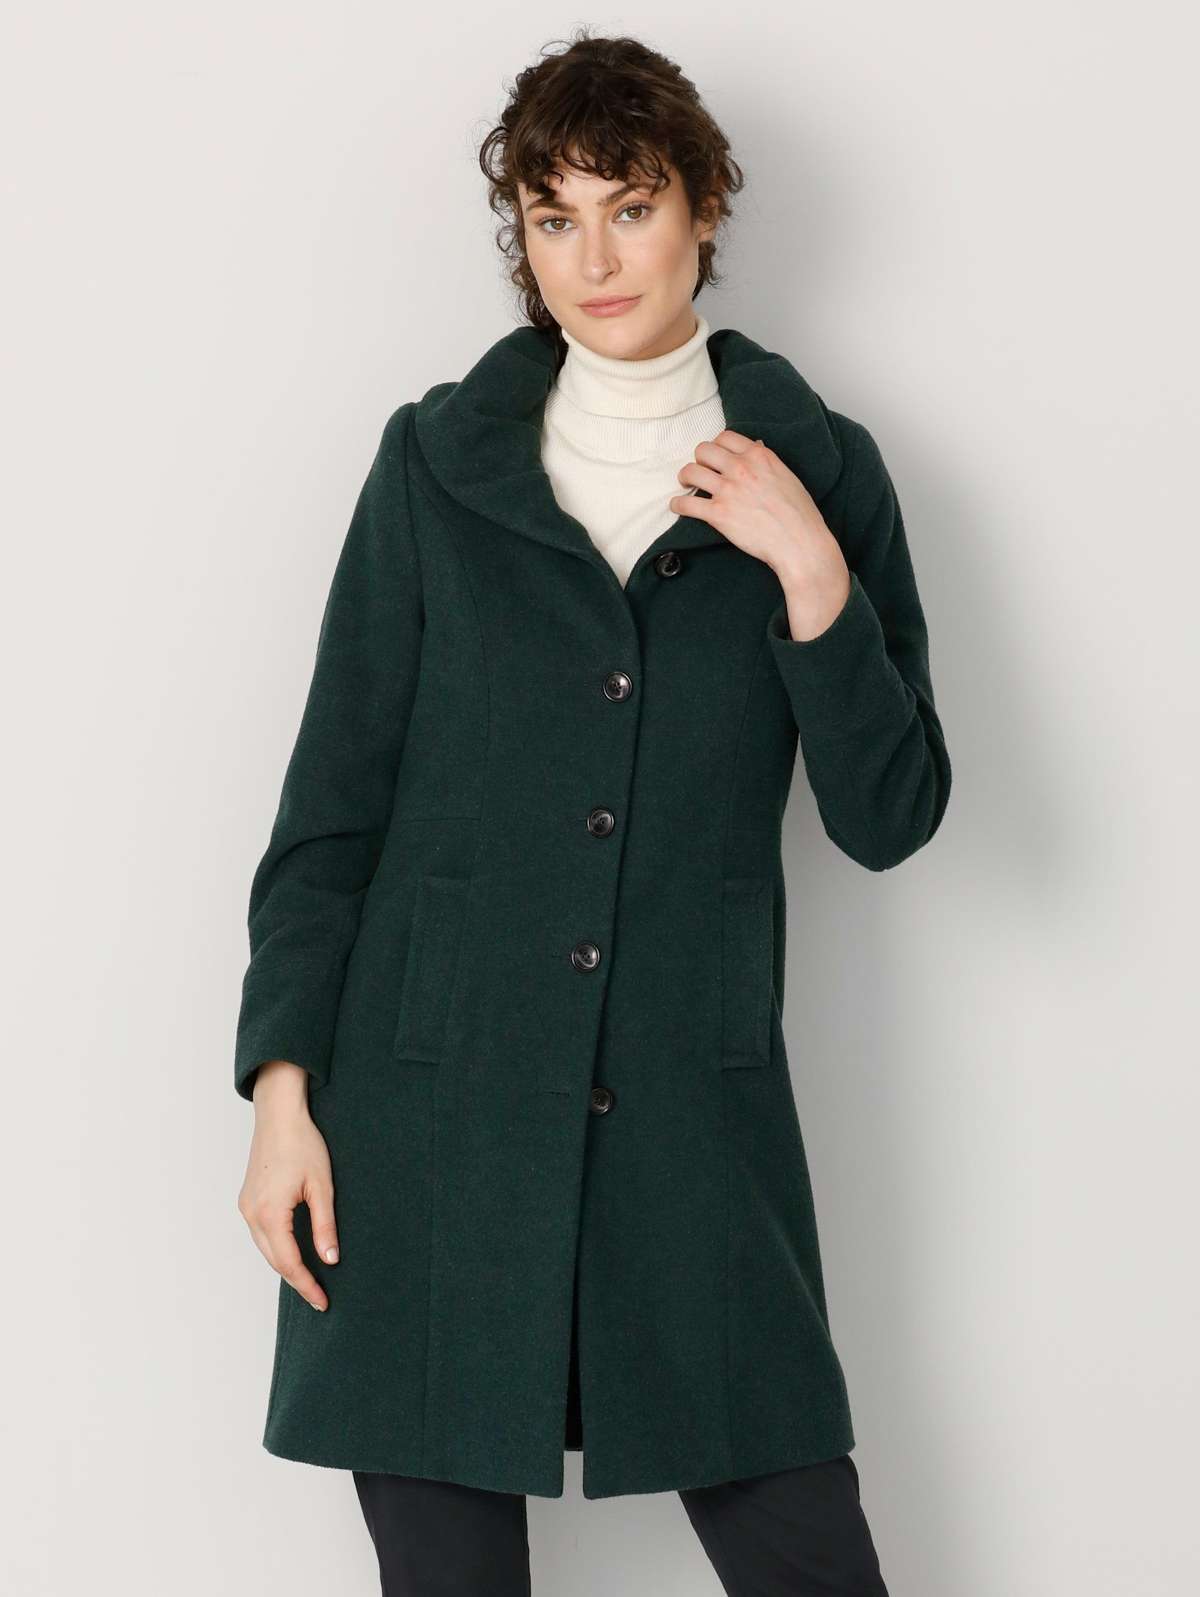 Короткое пальто с объемным шалевым воротником.